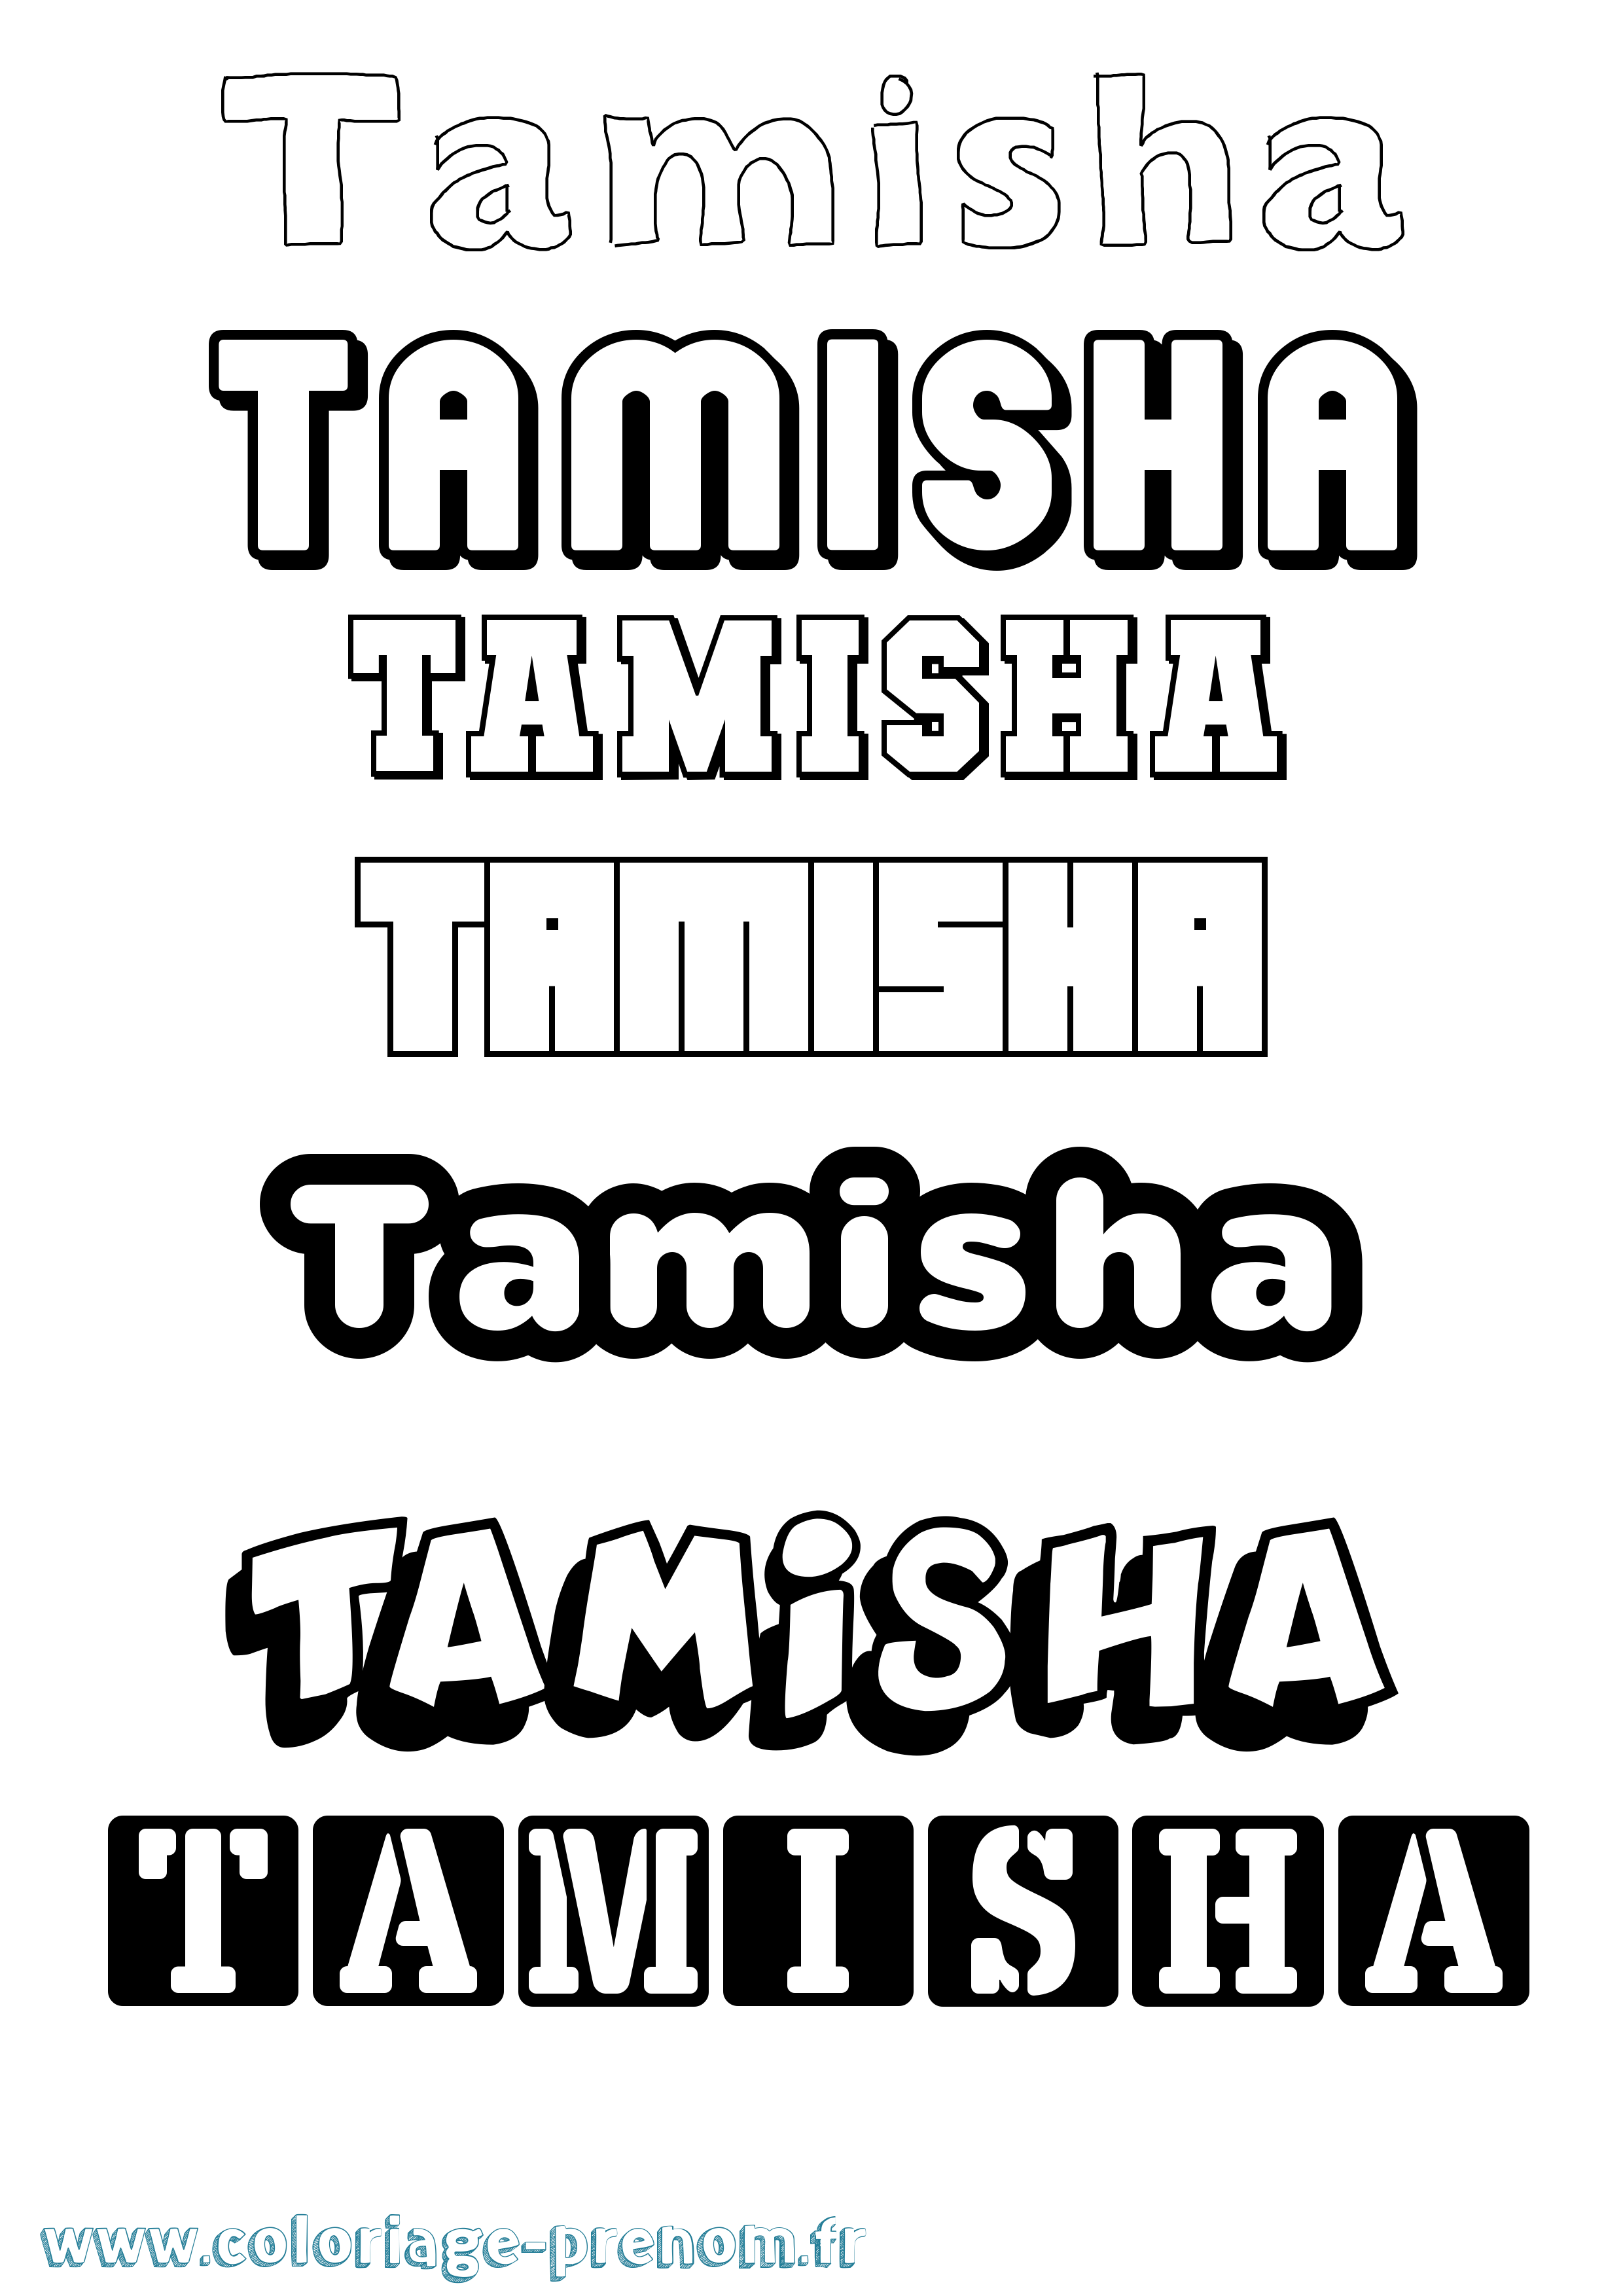 Coloriage du prénom Tamisha : à Imprimer ou Télécharger facilement